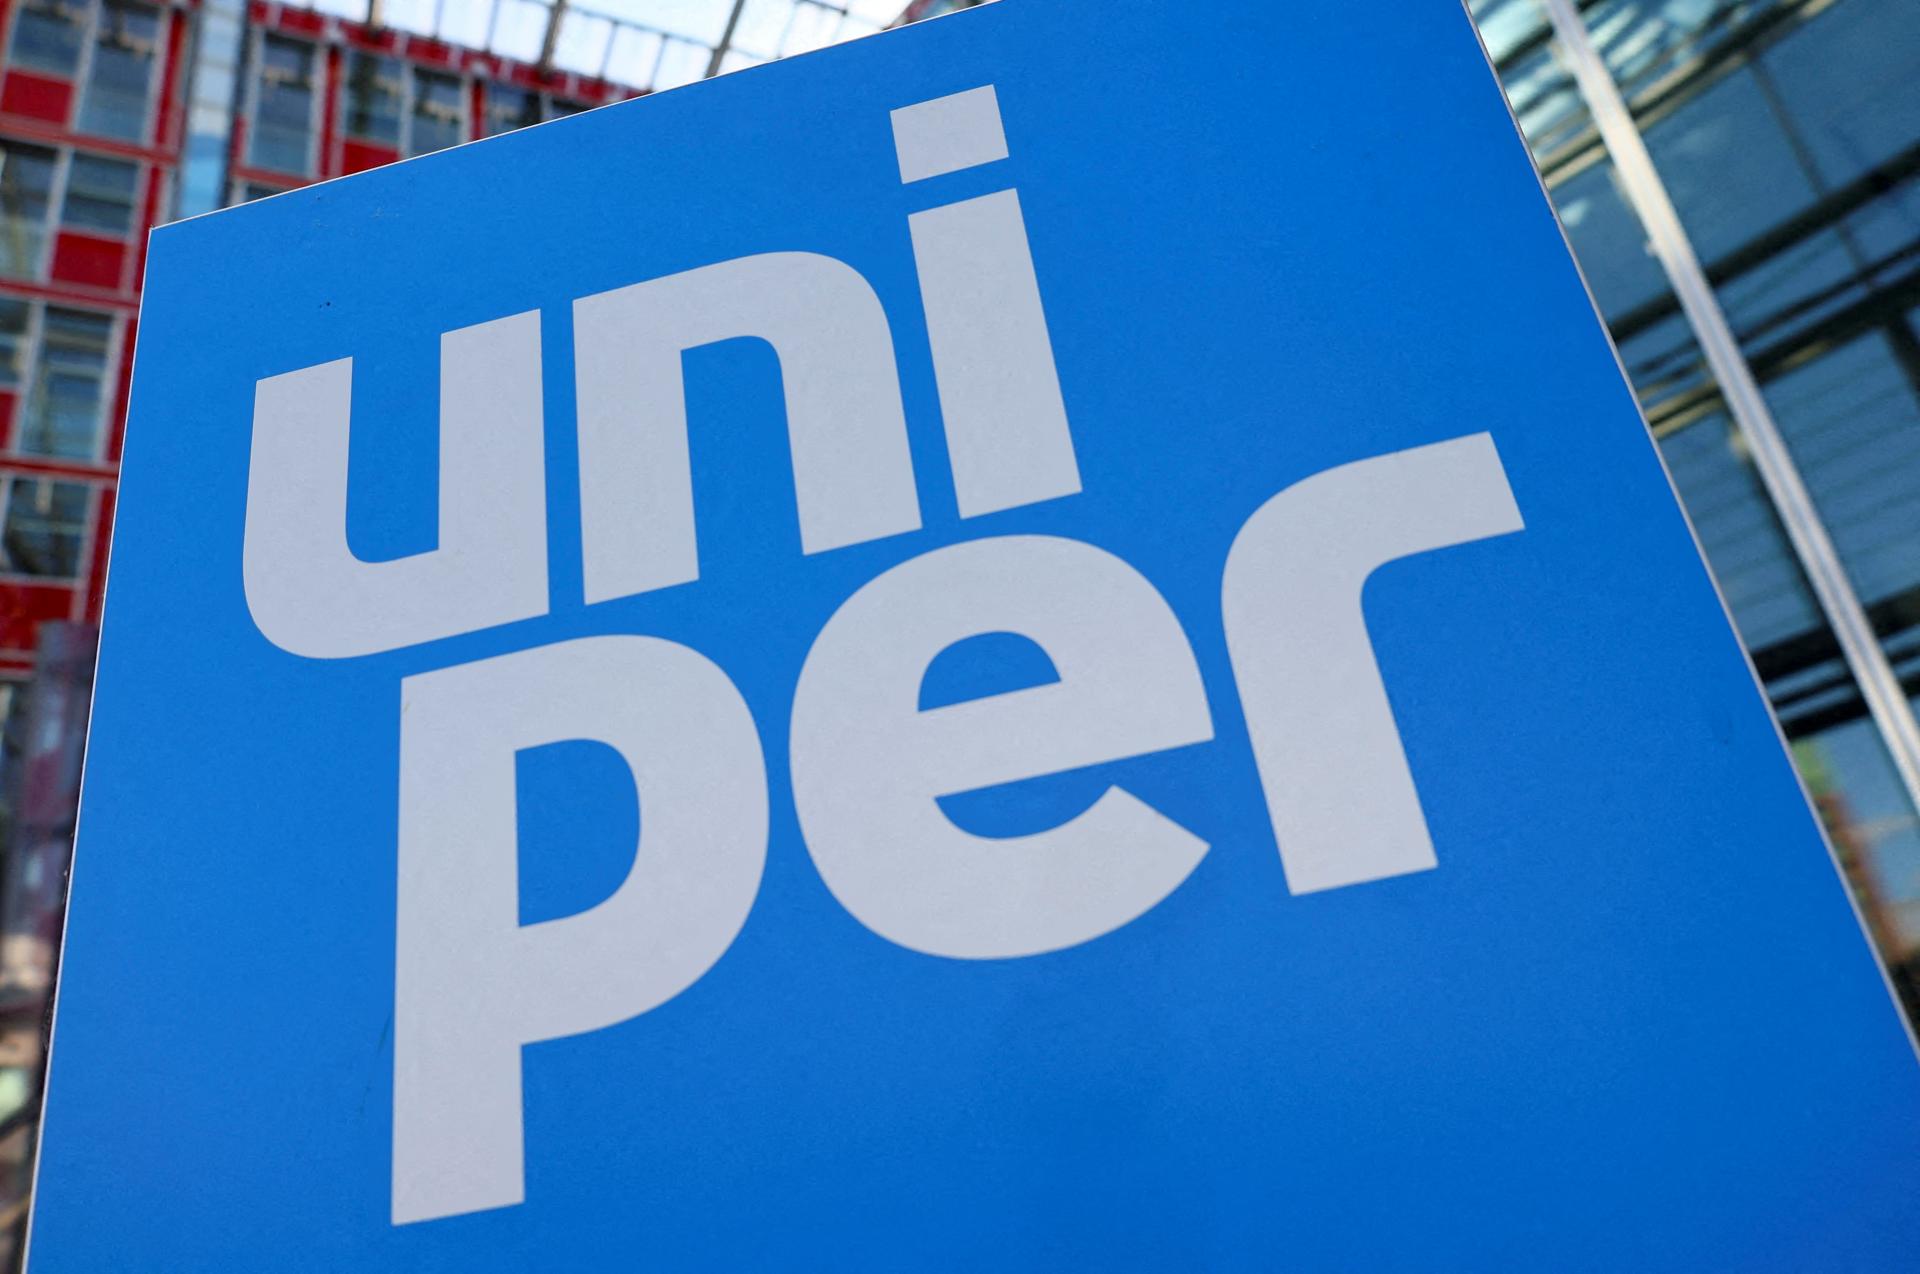 Nemecký dovozca plynu Uniper požaduje od Gazpromu miliardy eur za nedodaný plyn